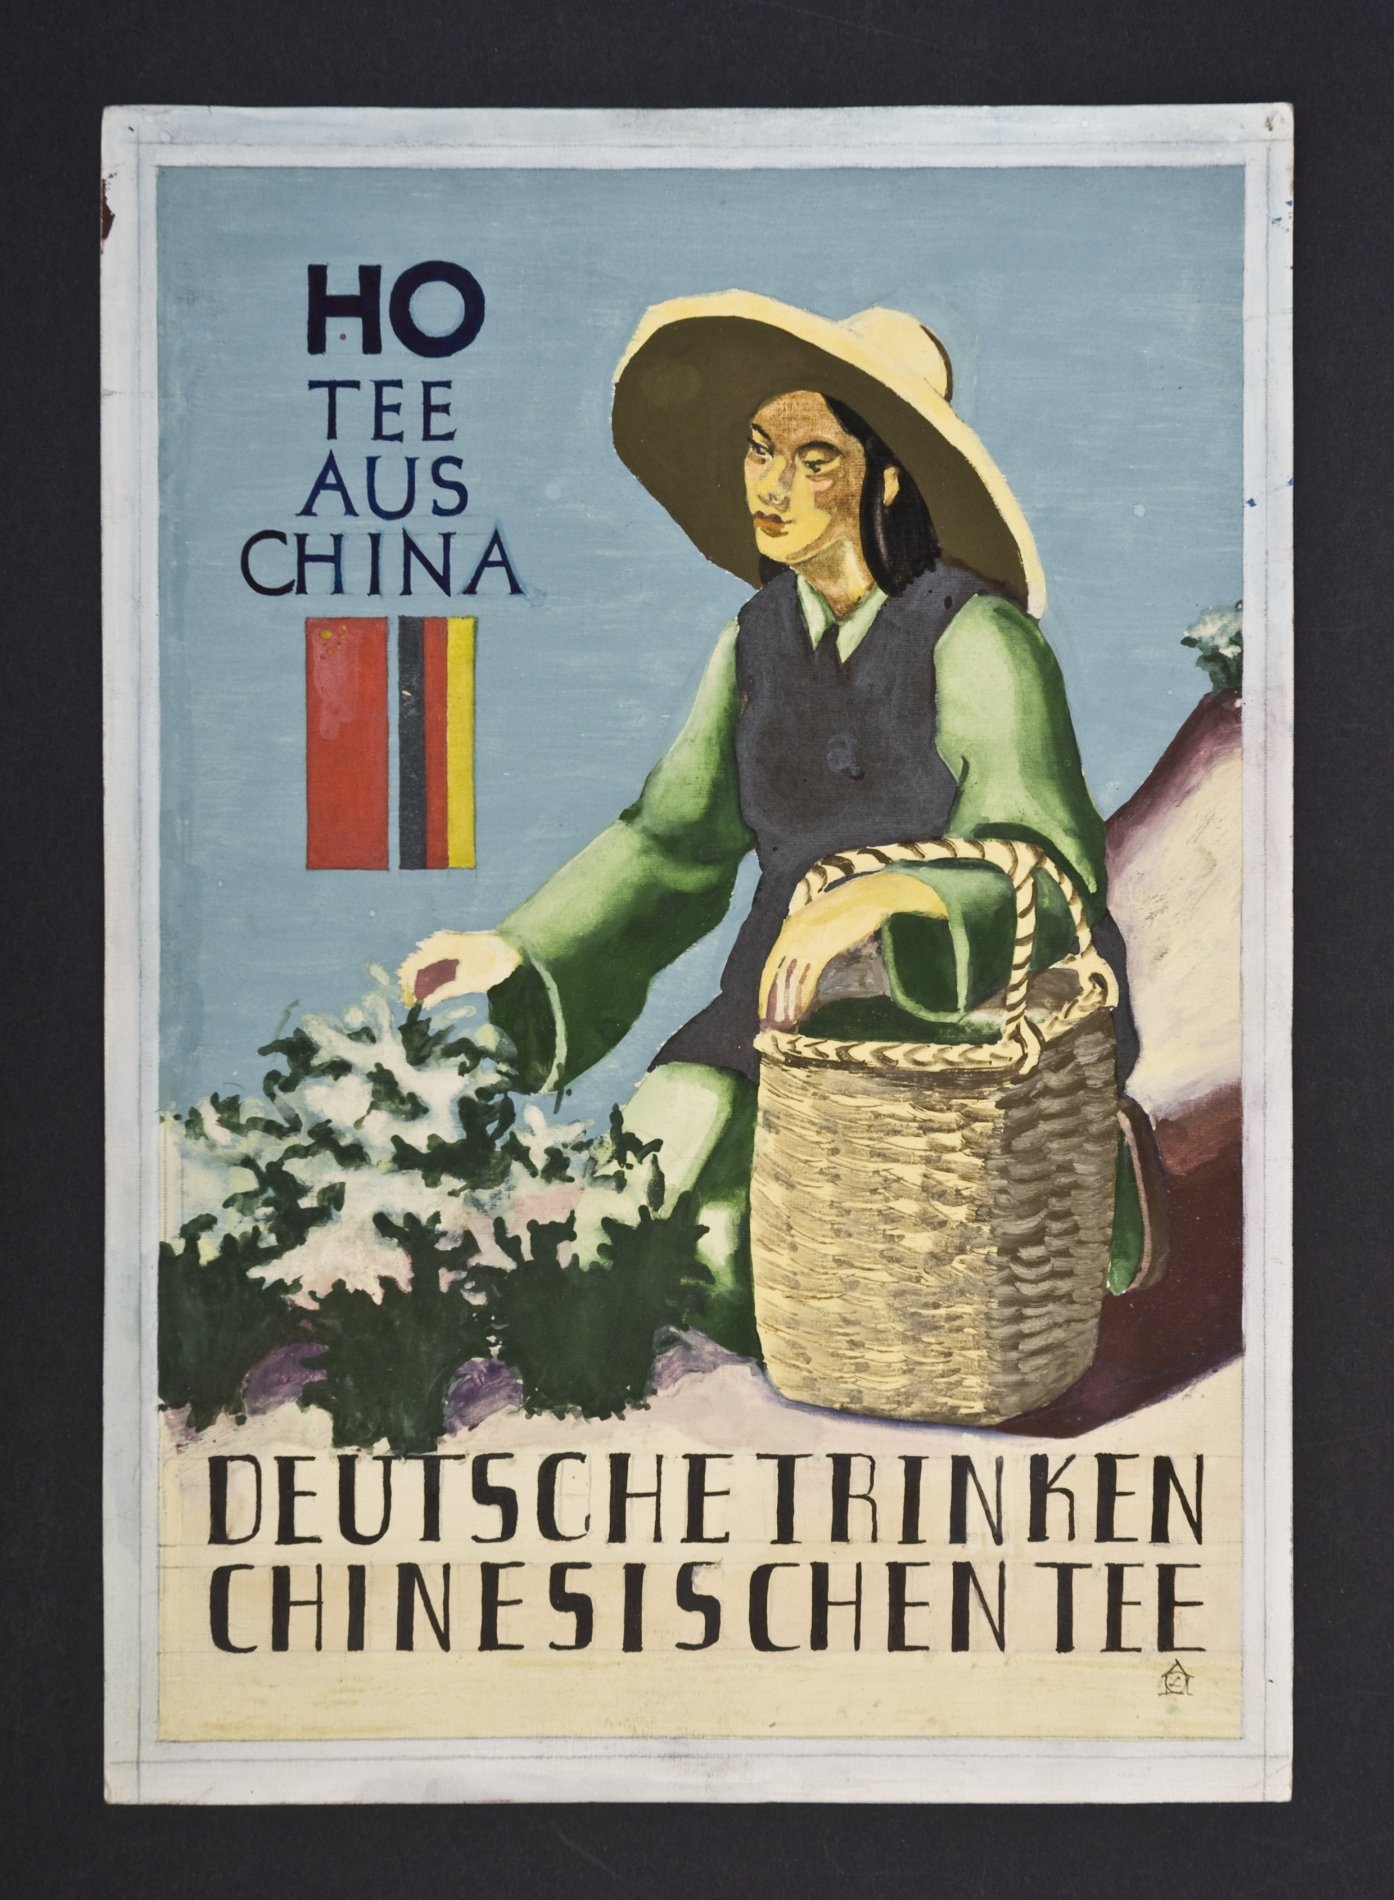 Reklameschild-Entwurf "HO Tee aus China - Deutsche trinken chinesischen Tee" (Stiftung Domäne Dahlem - Landgut und Museum, Weiternutzung nur mit Genehmigung des Museums CC BY-NC-SA)